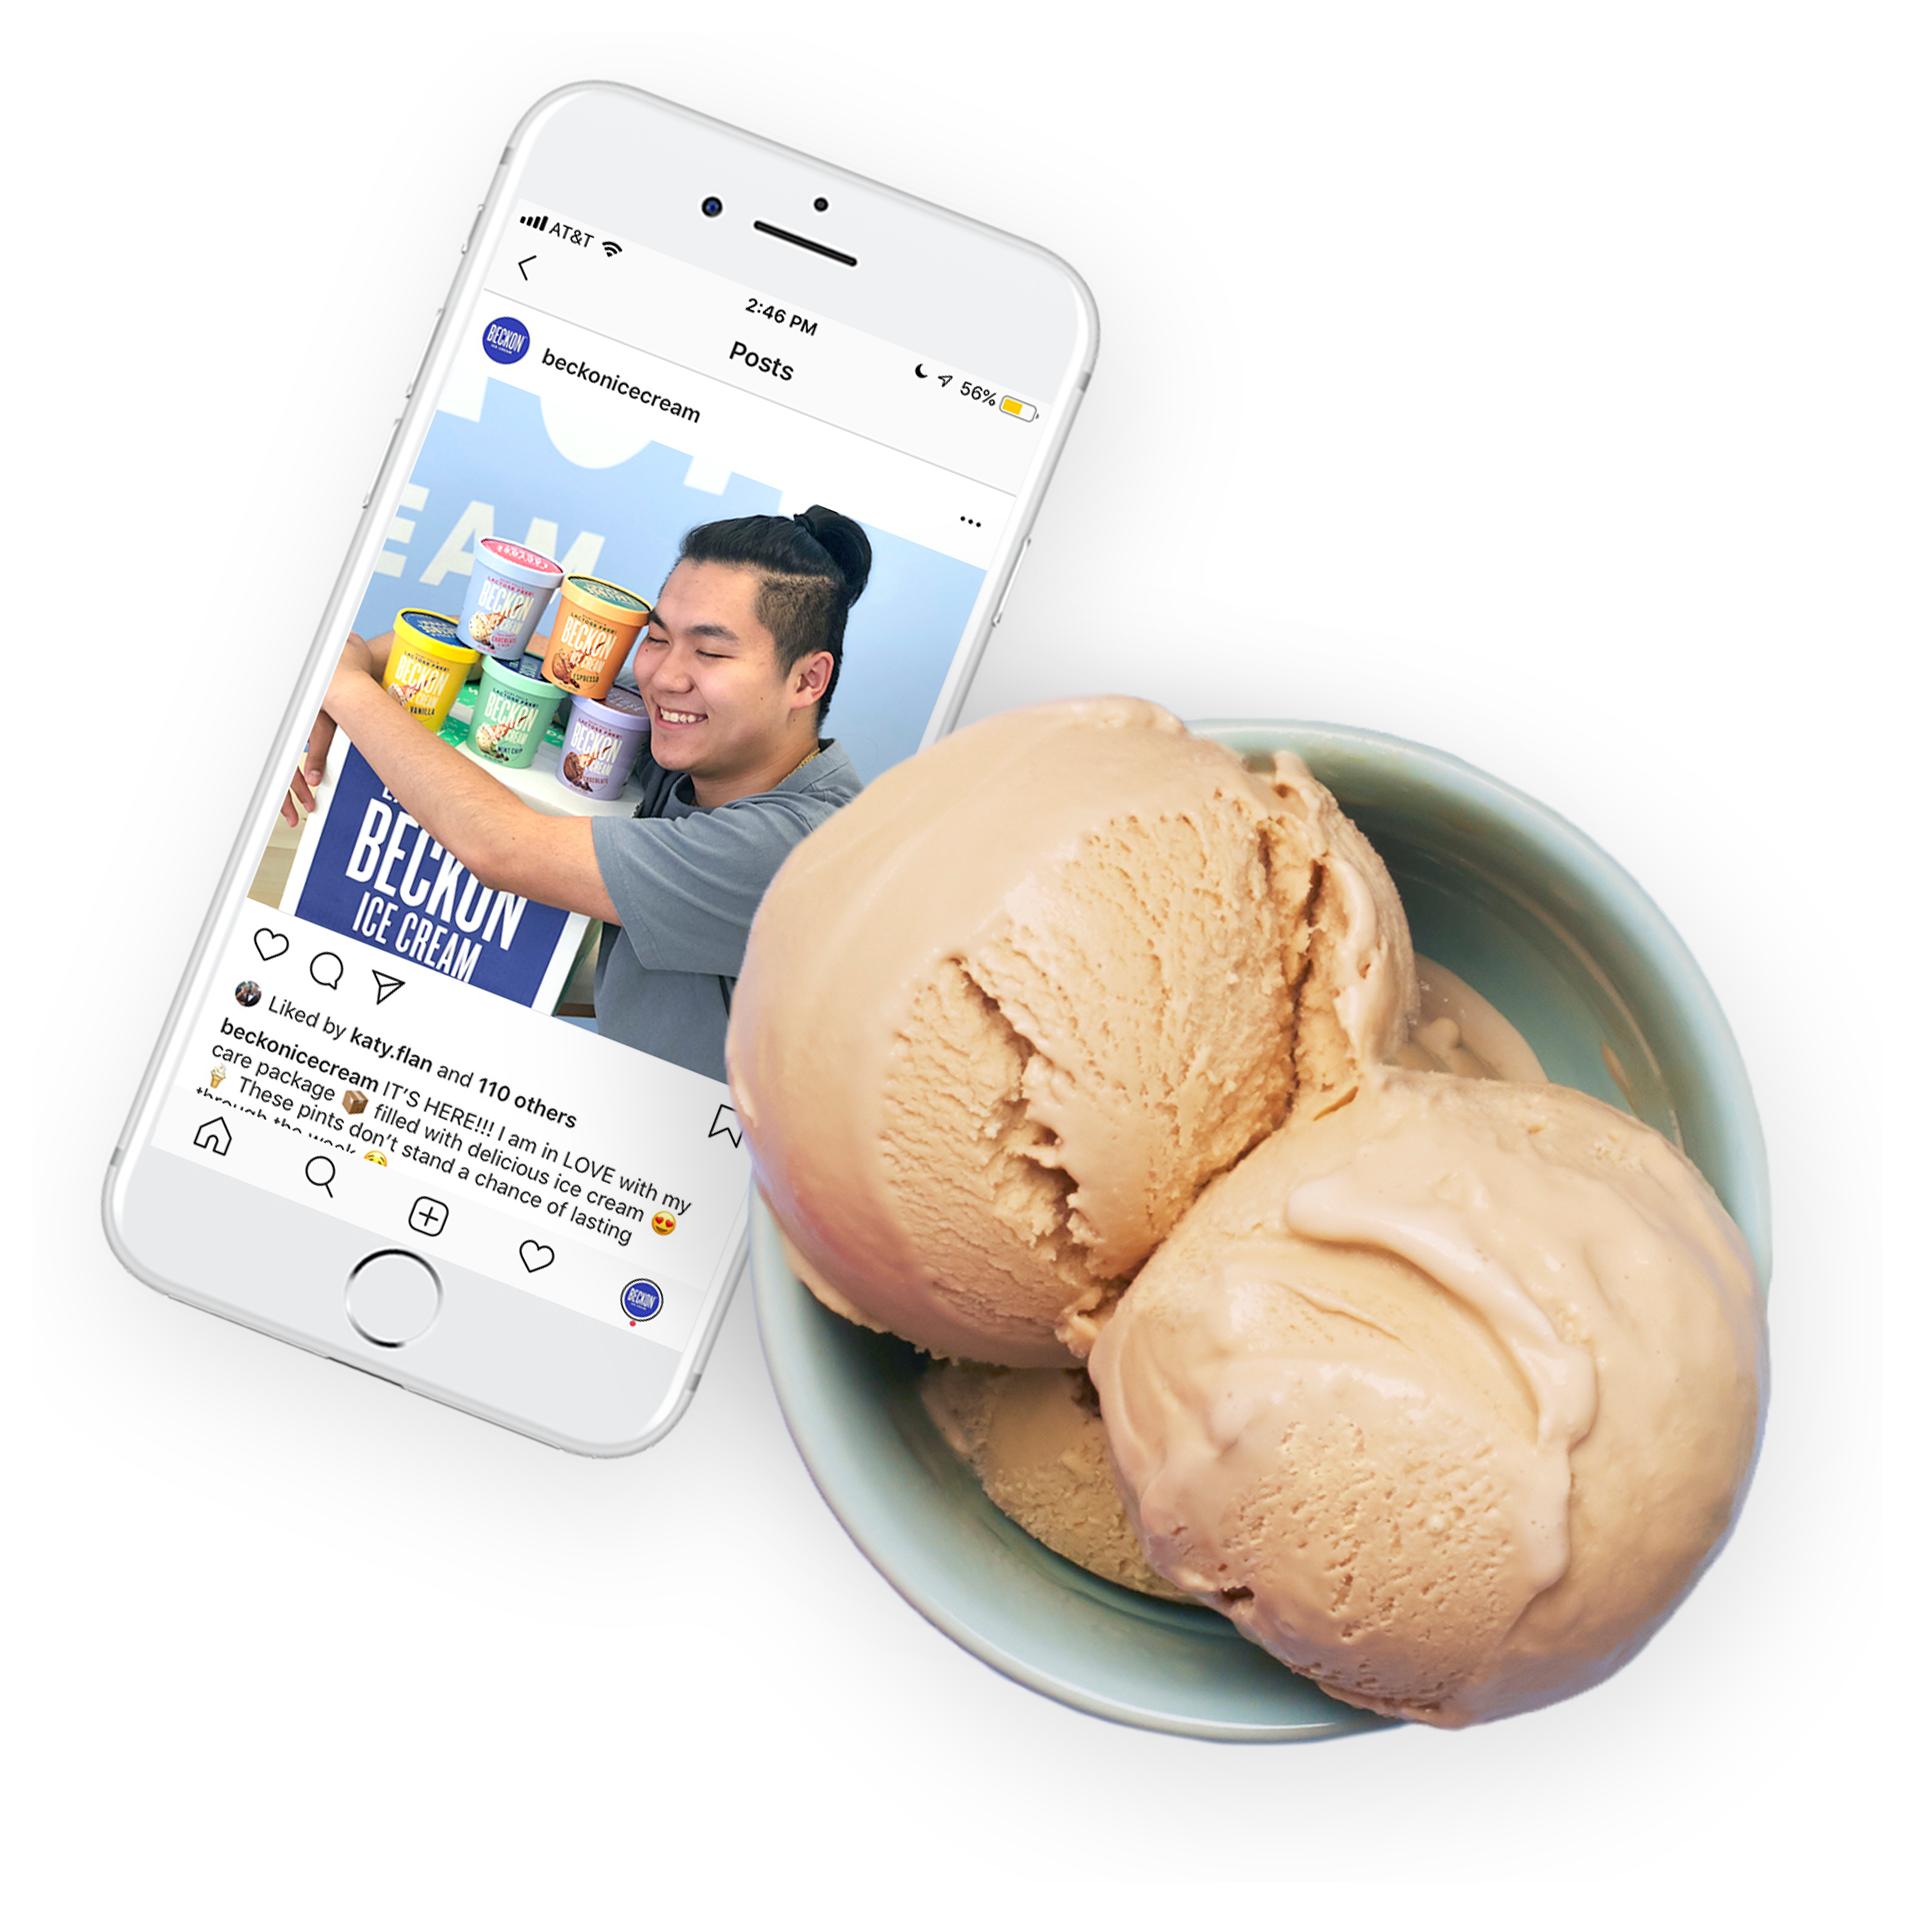 Beckon Ice Cream dairy full lactose free premium ice cream. Instagram on iPhone next to a bowl of delicious Espresso ice cream.